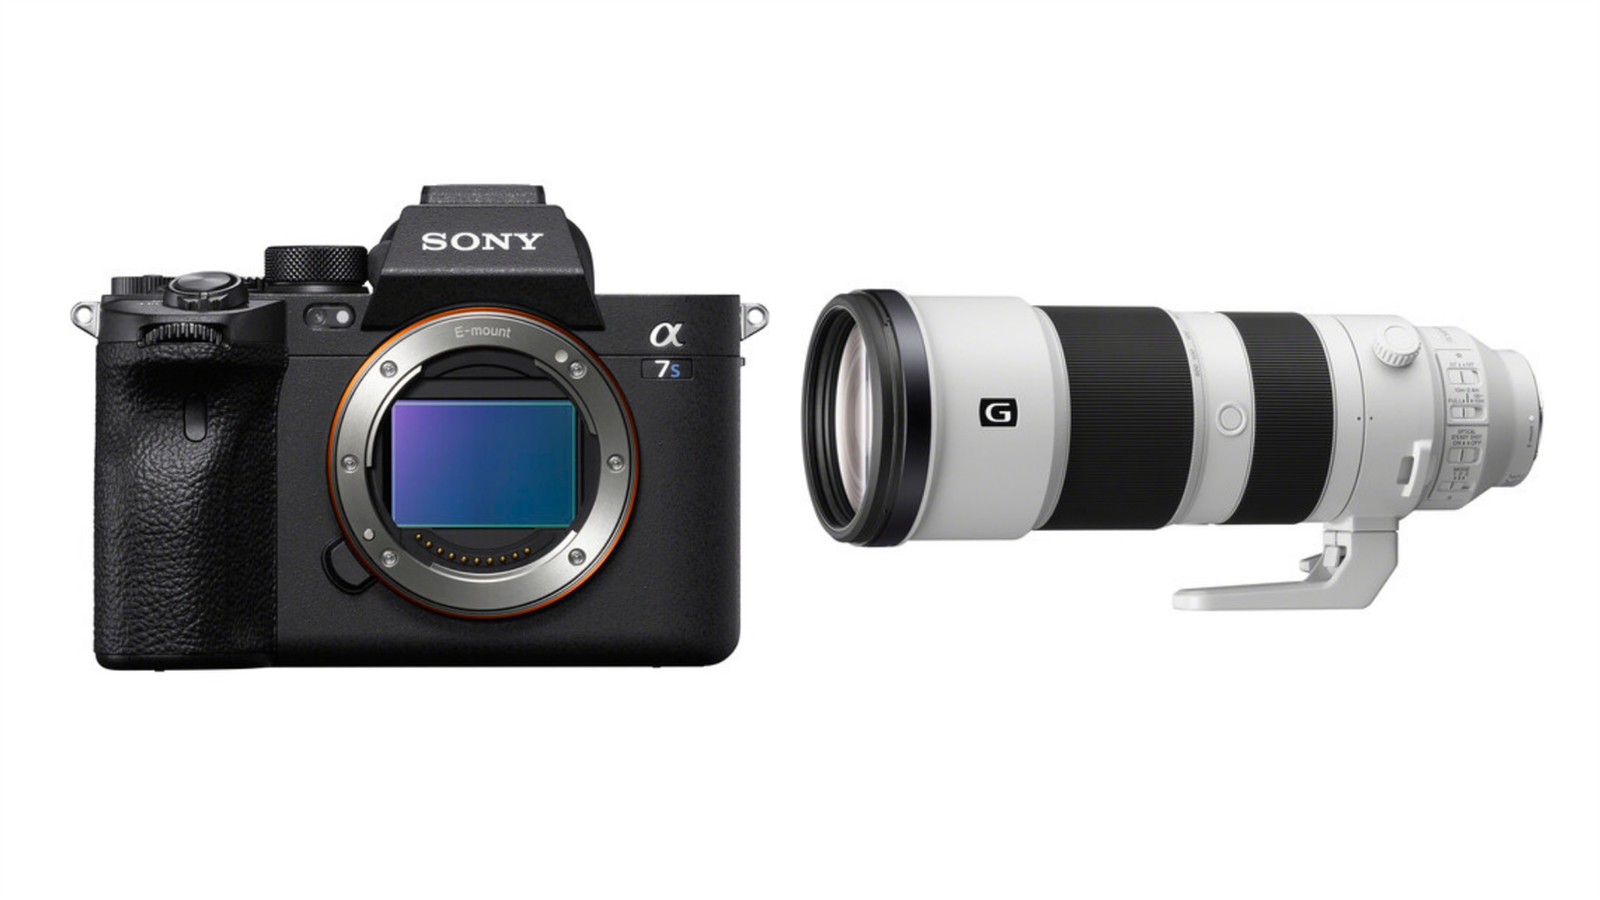  Sony FE 200-600mm f/5.6-6.3 G OSS Lens for Sony E